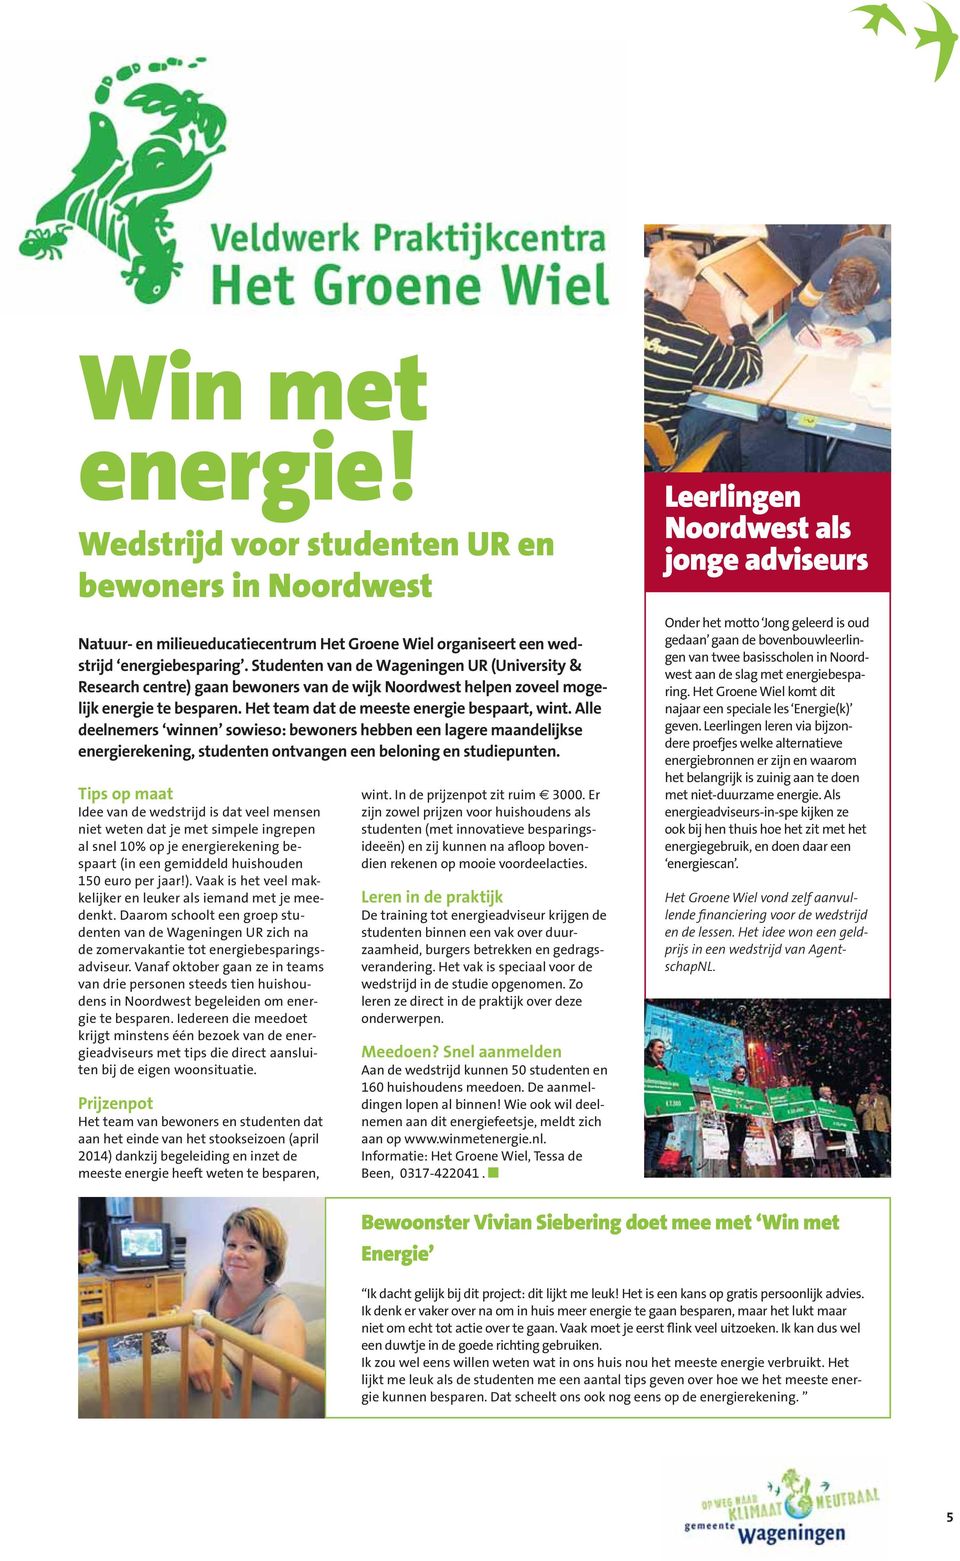 Studenten van de Wageningen UR (University & Research centre) gaan bewoners van de wijk Noordwest helpen zoveel mogelijk energie te besparen. Het team dat de meeste energie bespaart, wint.